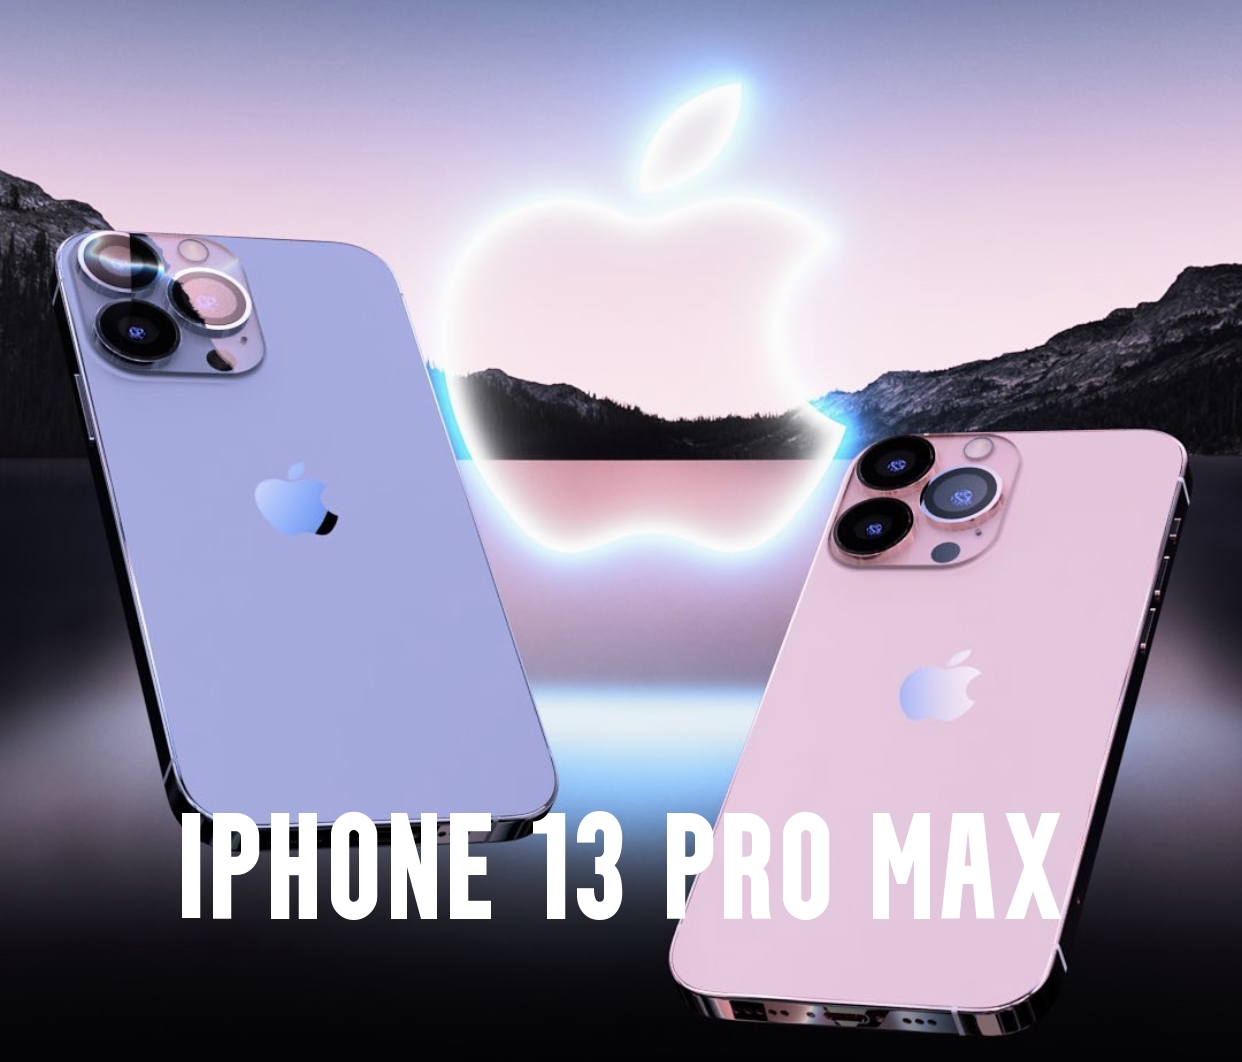 iPhone 13 Pro Max Price 